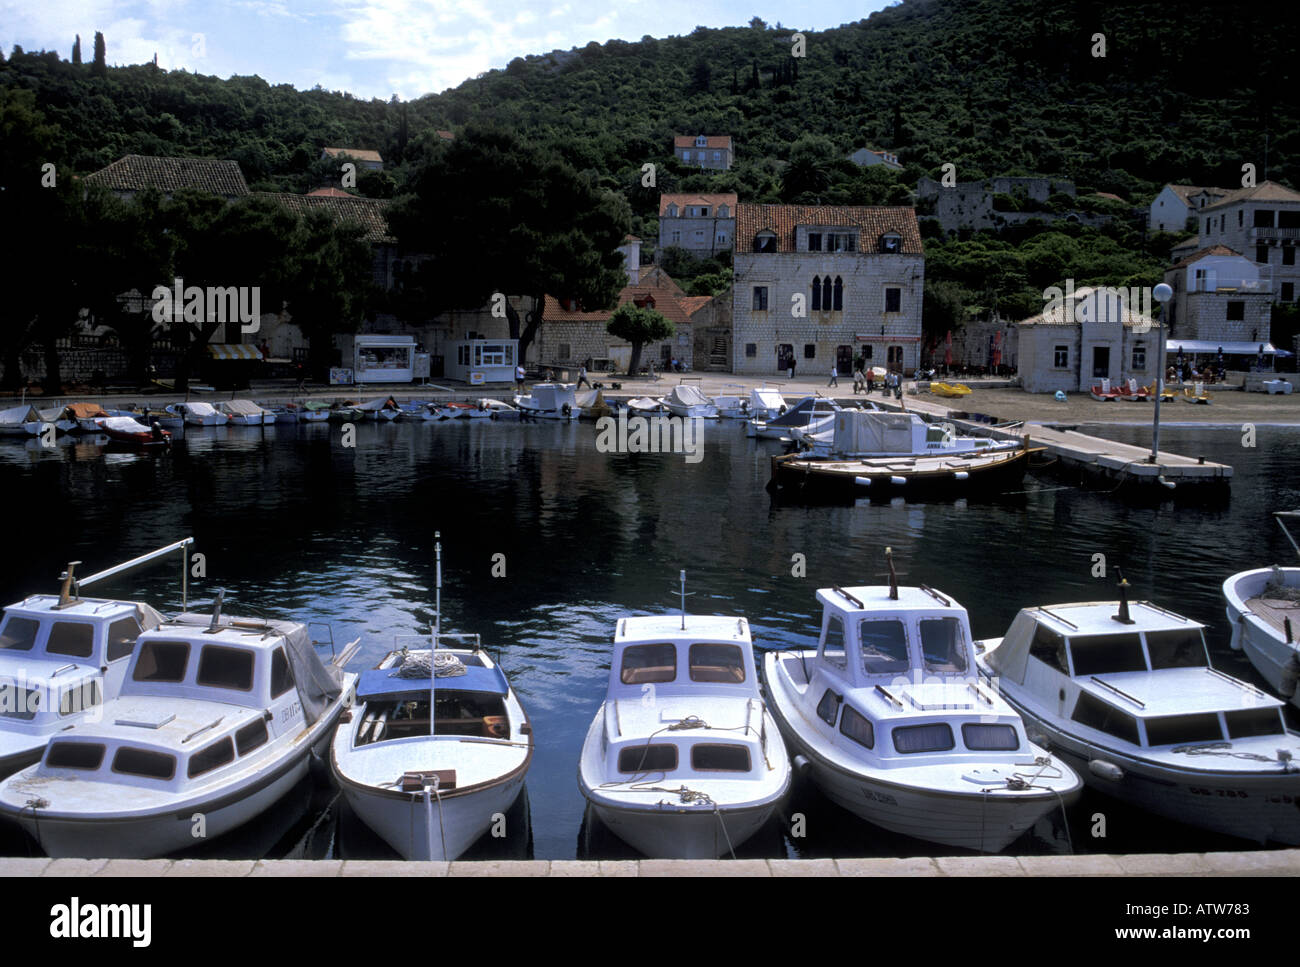 Le port de l'île de Lopud, Croatie Dalmatie Élaphites Banque D'Images